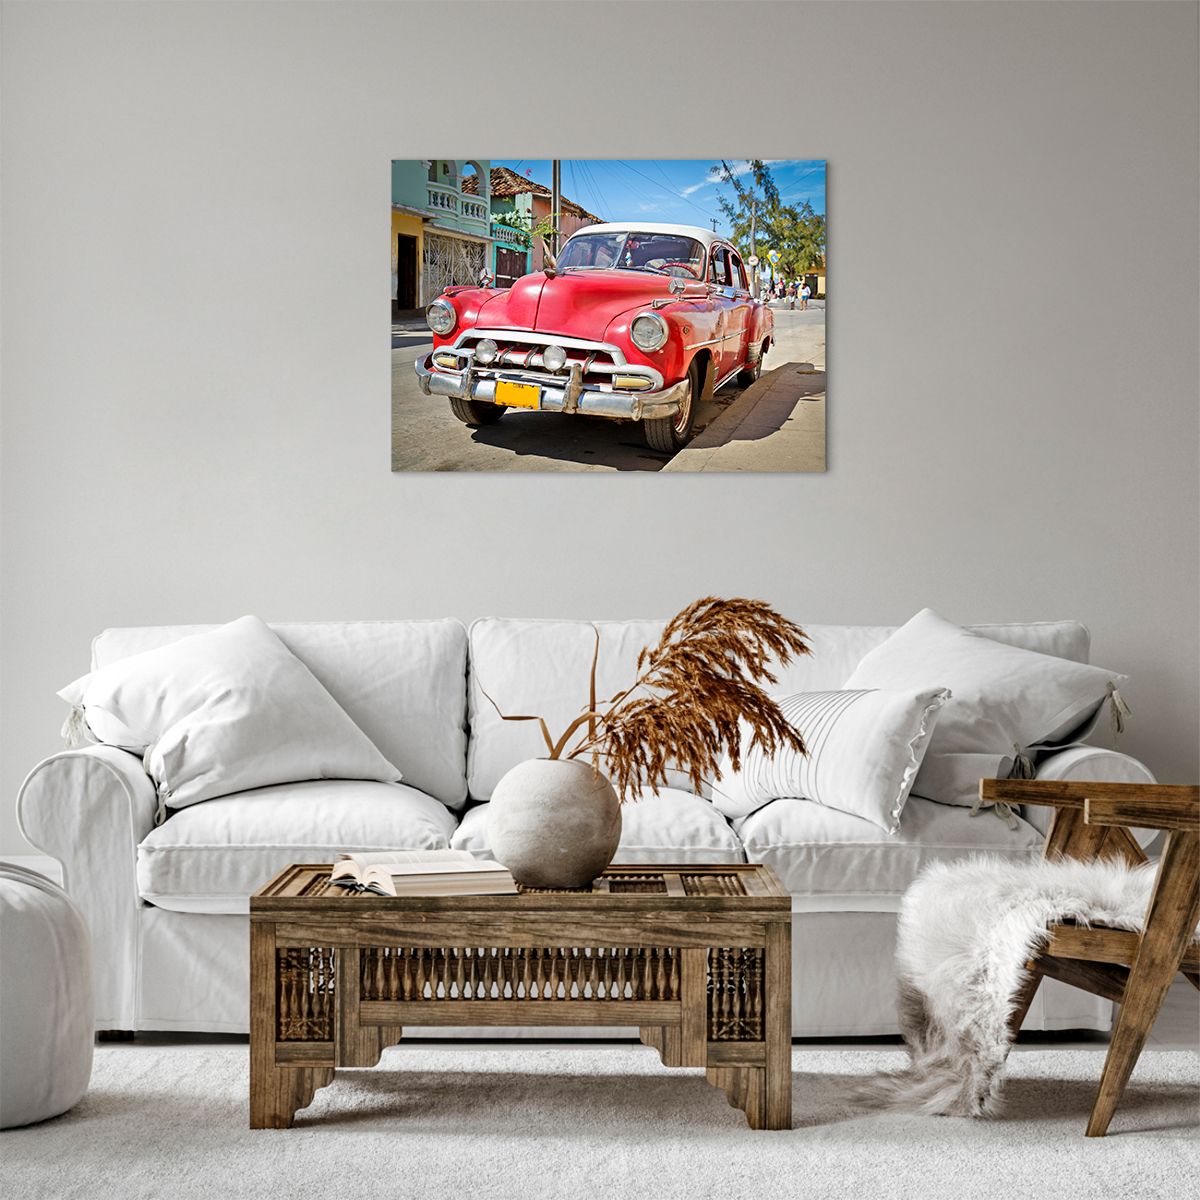 Bild auf Leinwand Automobil, Bild auf Leinwand Oldtimer, Bild auf Leinwand Die Architektur, Bild auf Leinwand Kuba, Bild auf Leinwand Havanna